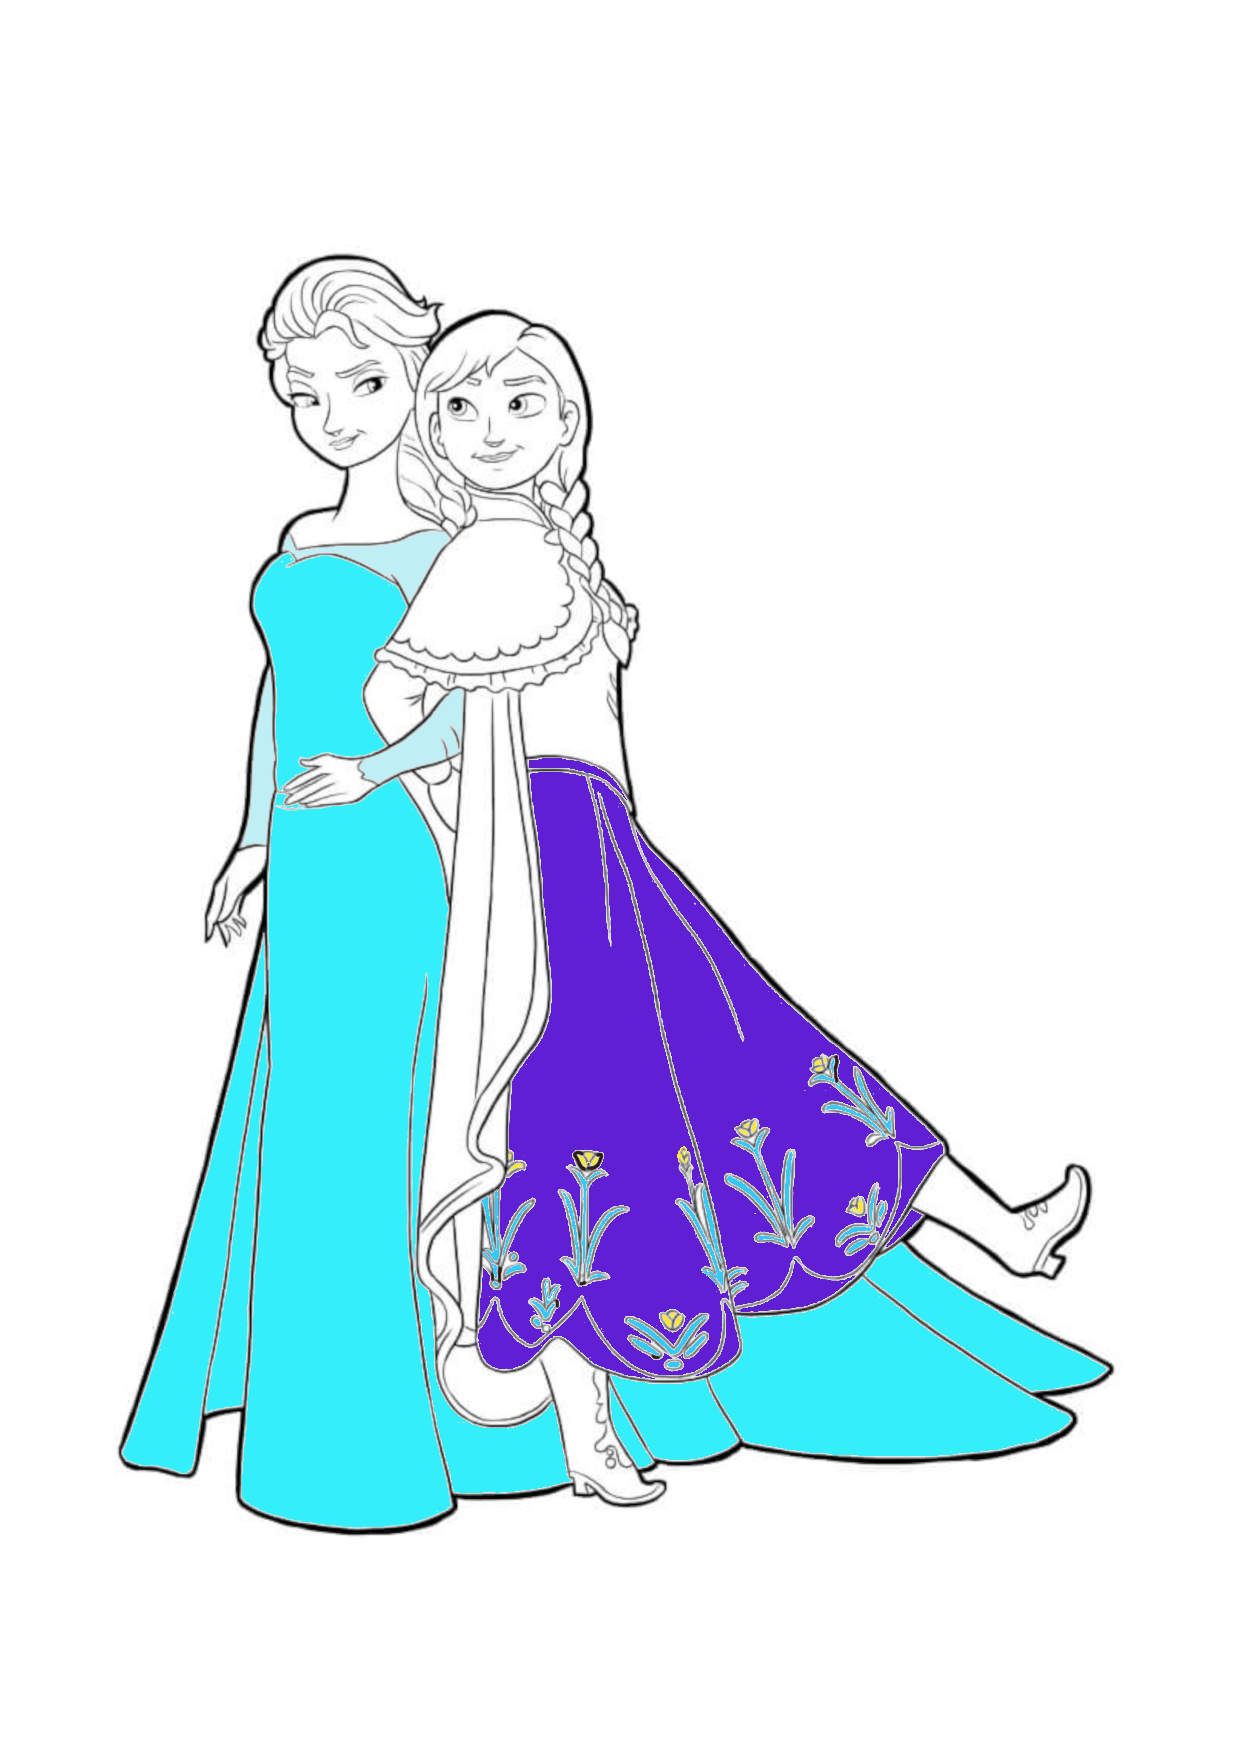 Váy Elsa - Frozen: Xu hướng thời trang trẻ em 